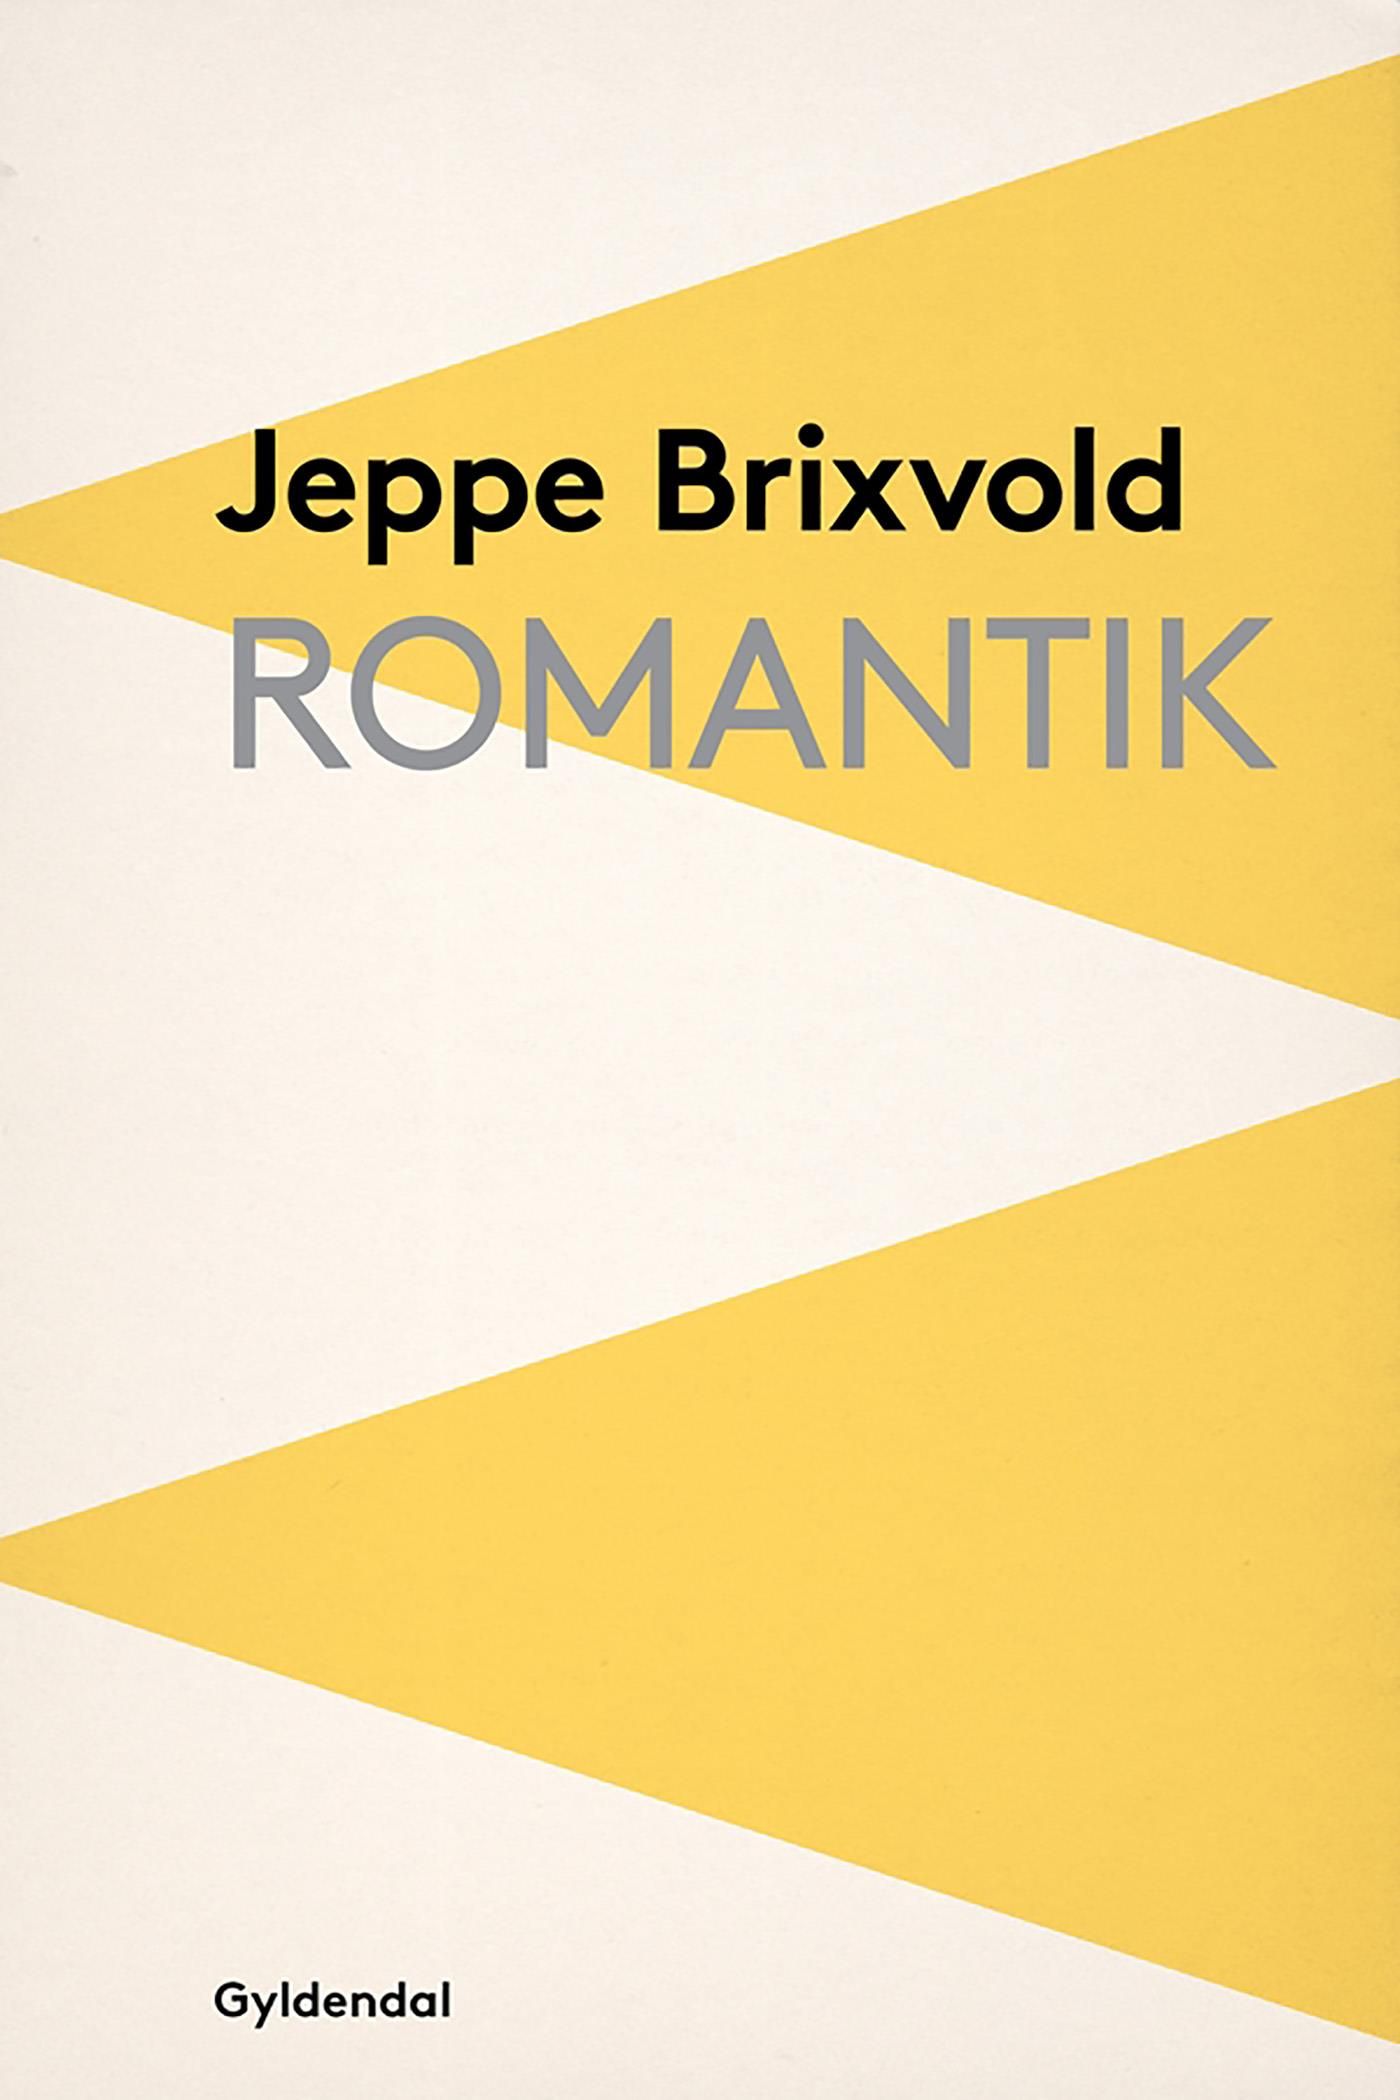 Romantik, eBook by Jeppe Brixvold